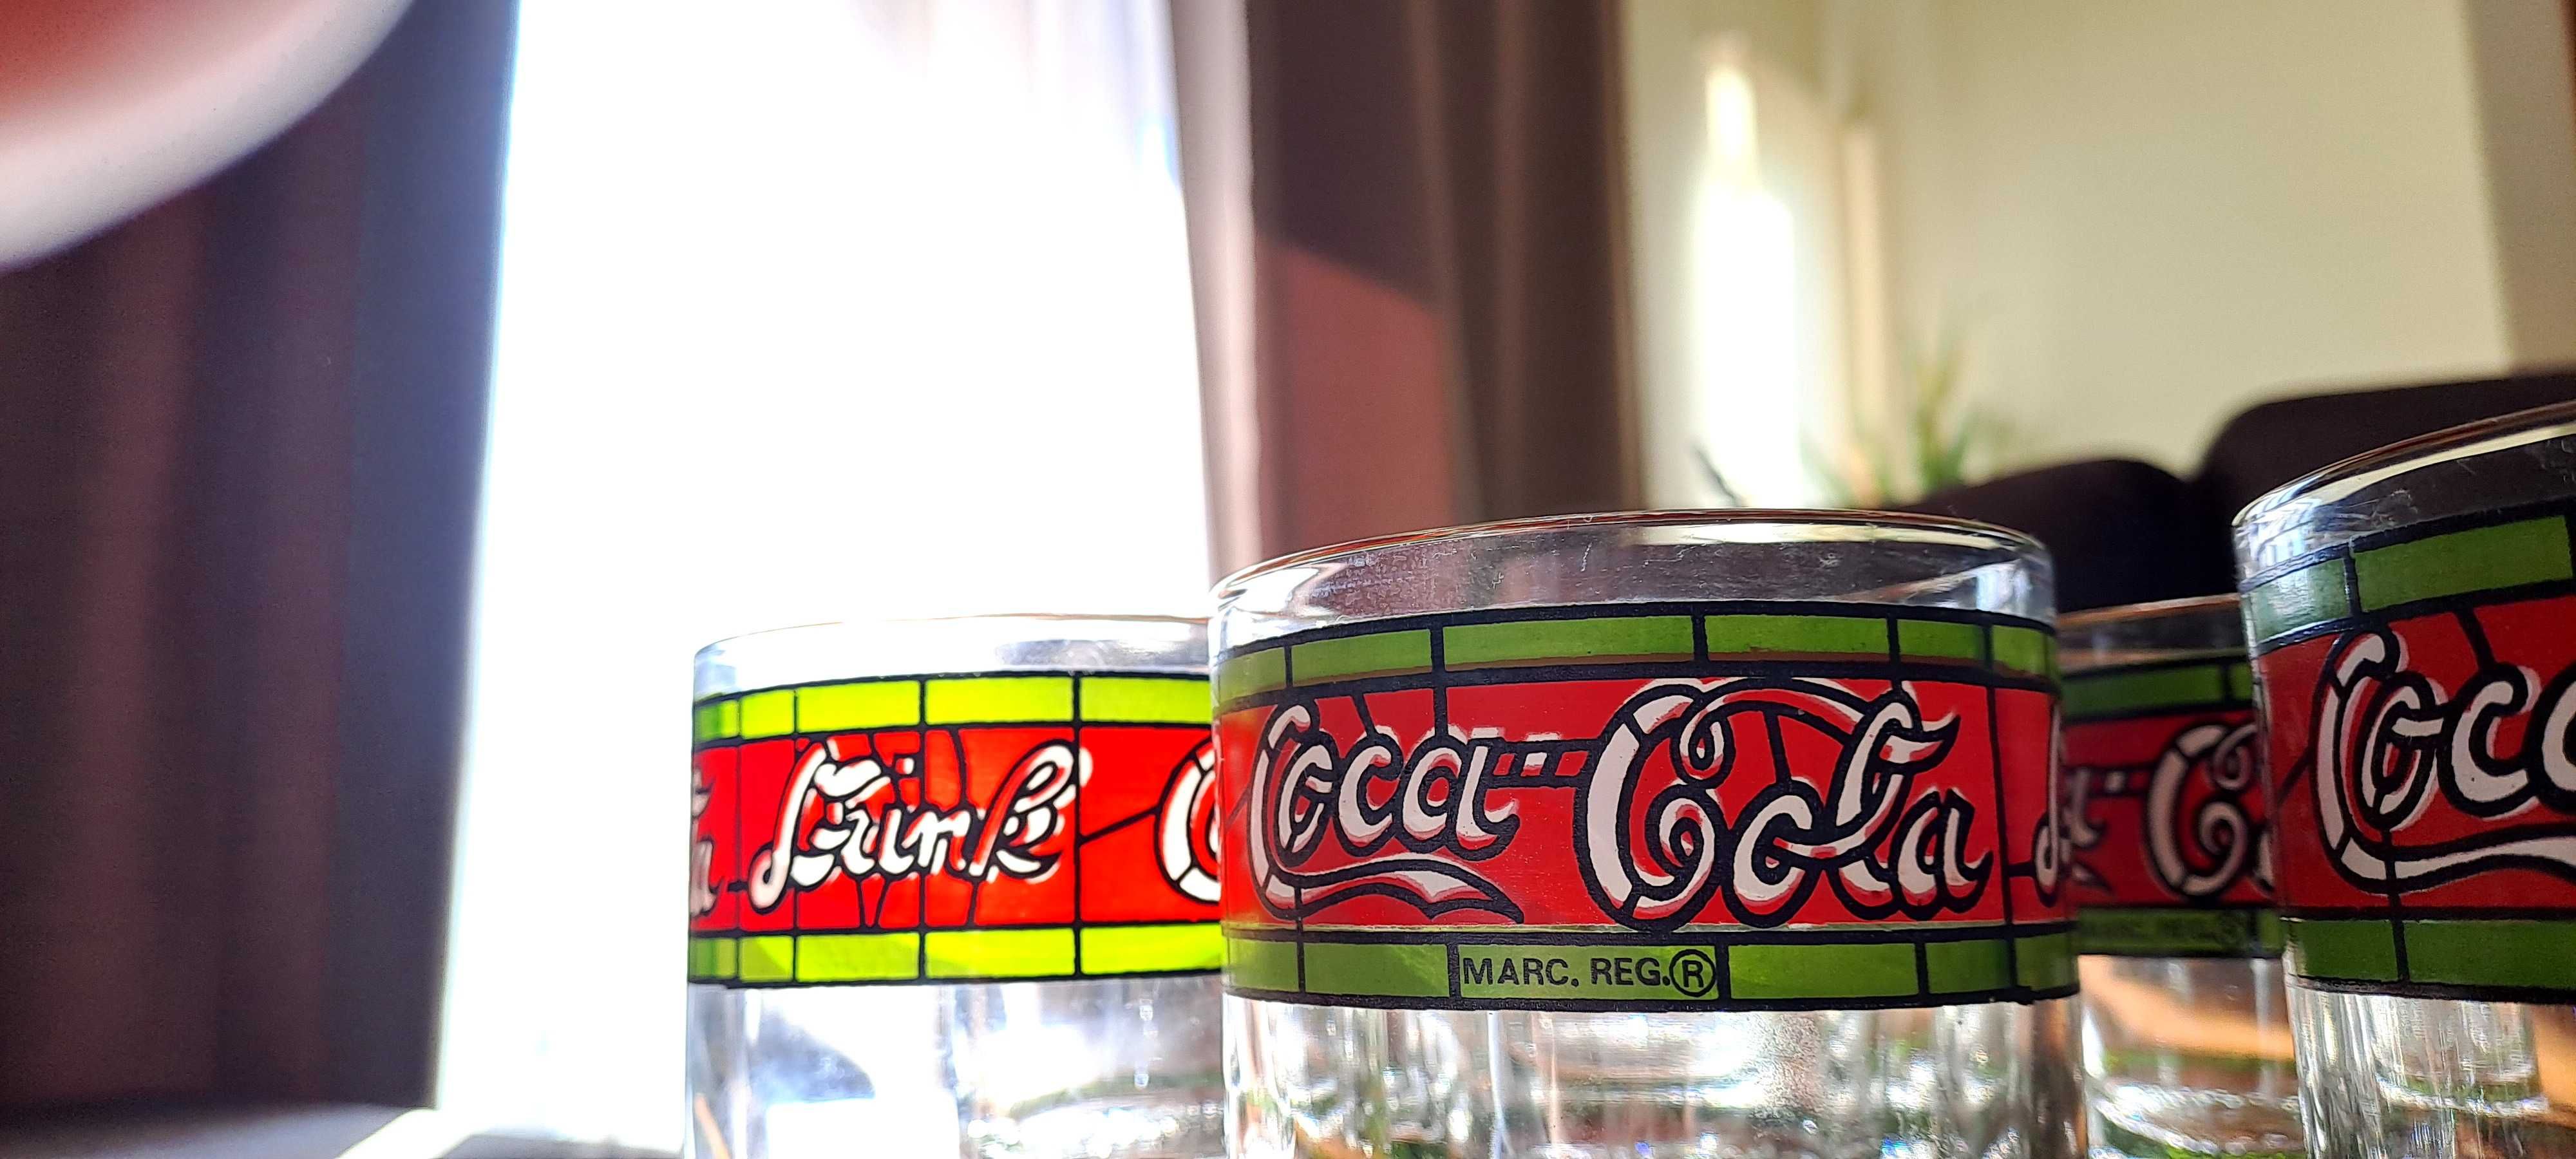 8 Copos Coca-Cola vintage